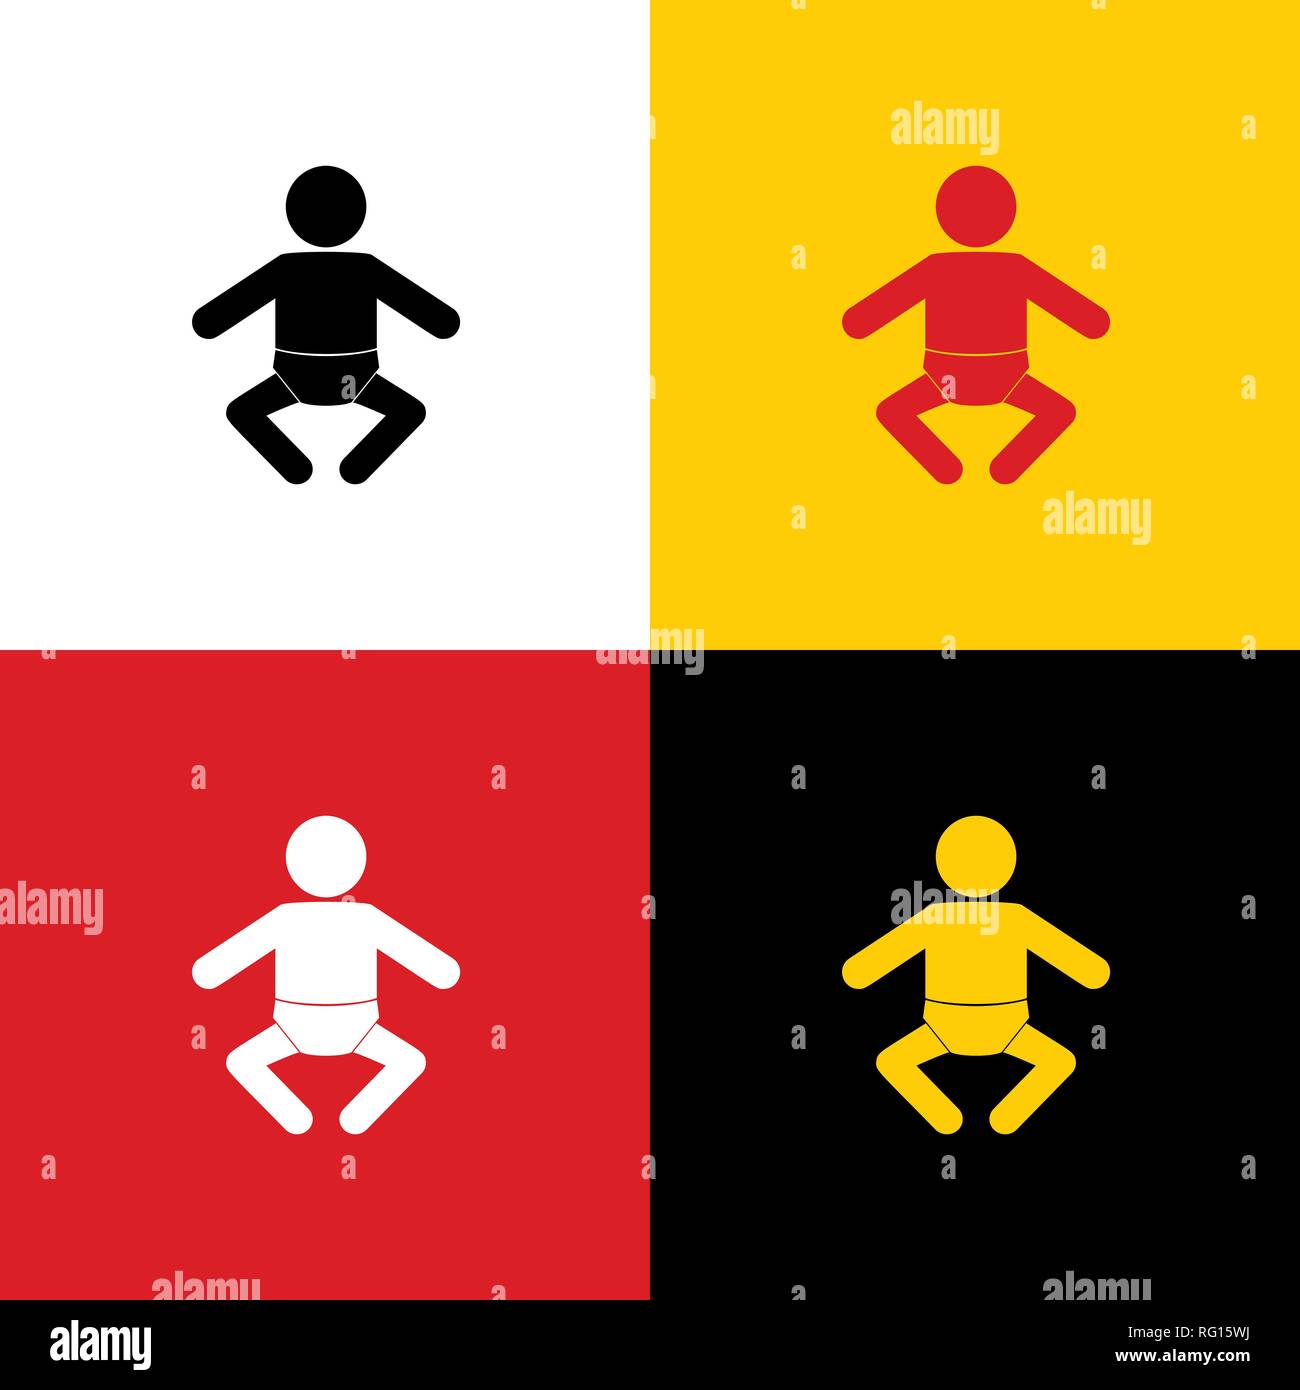 Baby-zeichen-Abbildung. Vektor. Symbole der deutschen Flagge auf entsprechenden Farben als Hintergrund. Stock Vektor